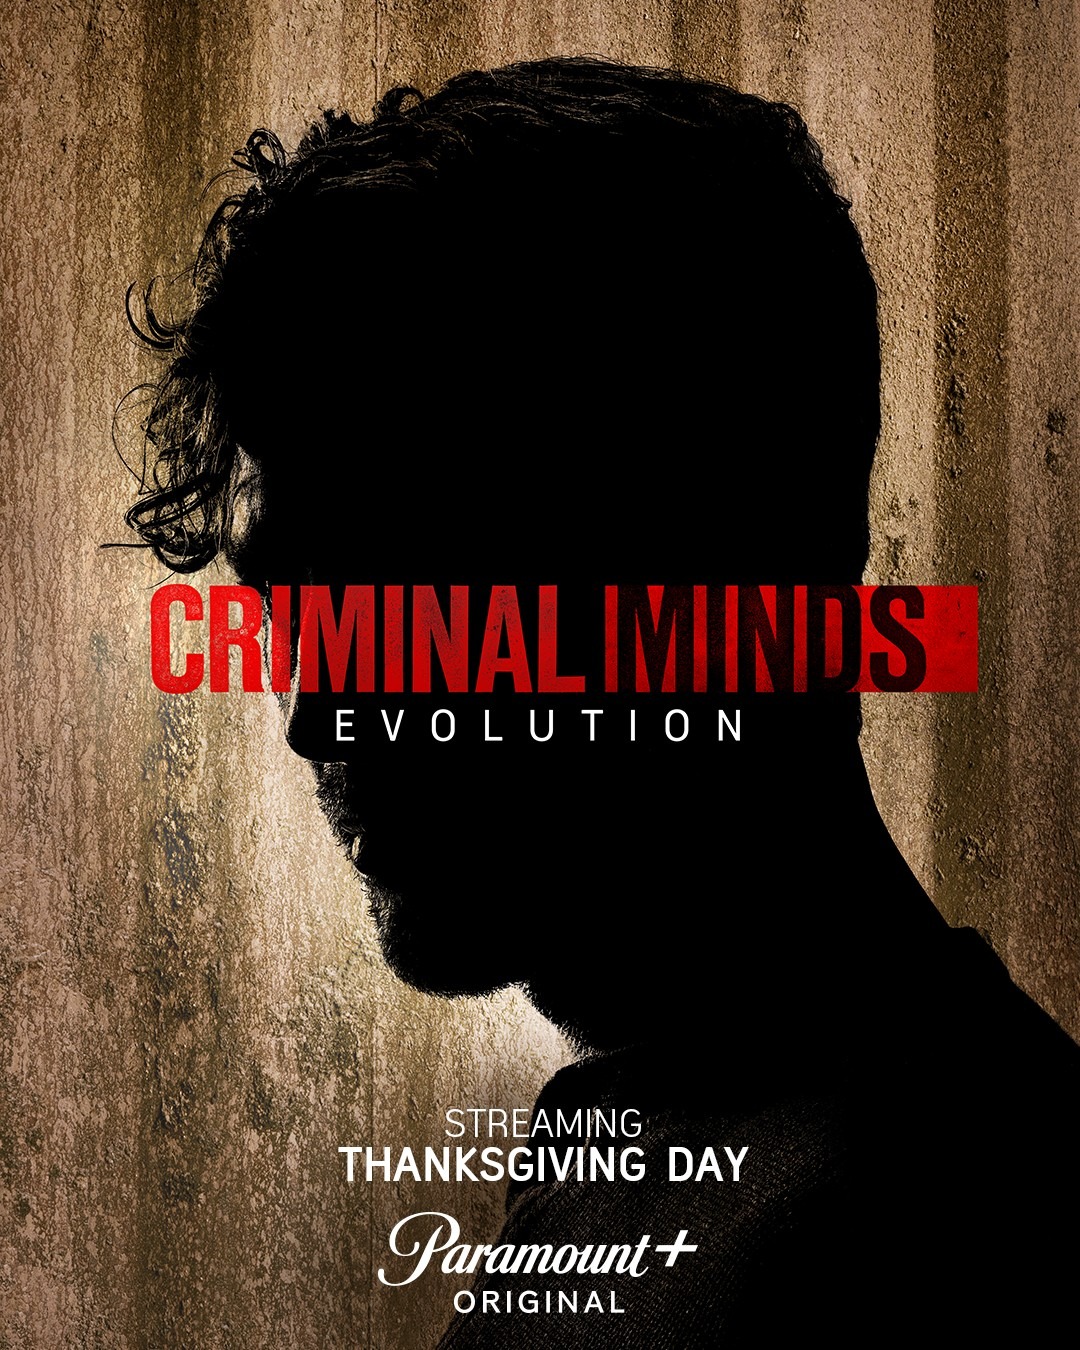 Extra Large TV Poster Image for Criminal Minds: Evolution (#1 of 9)